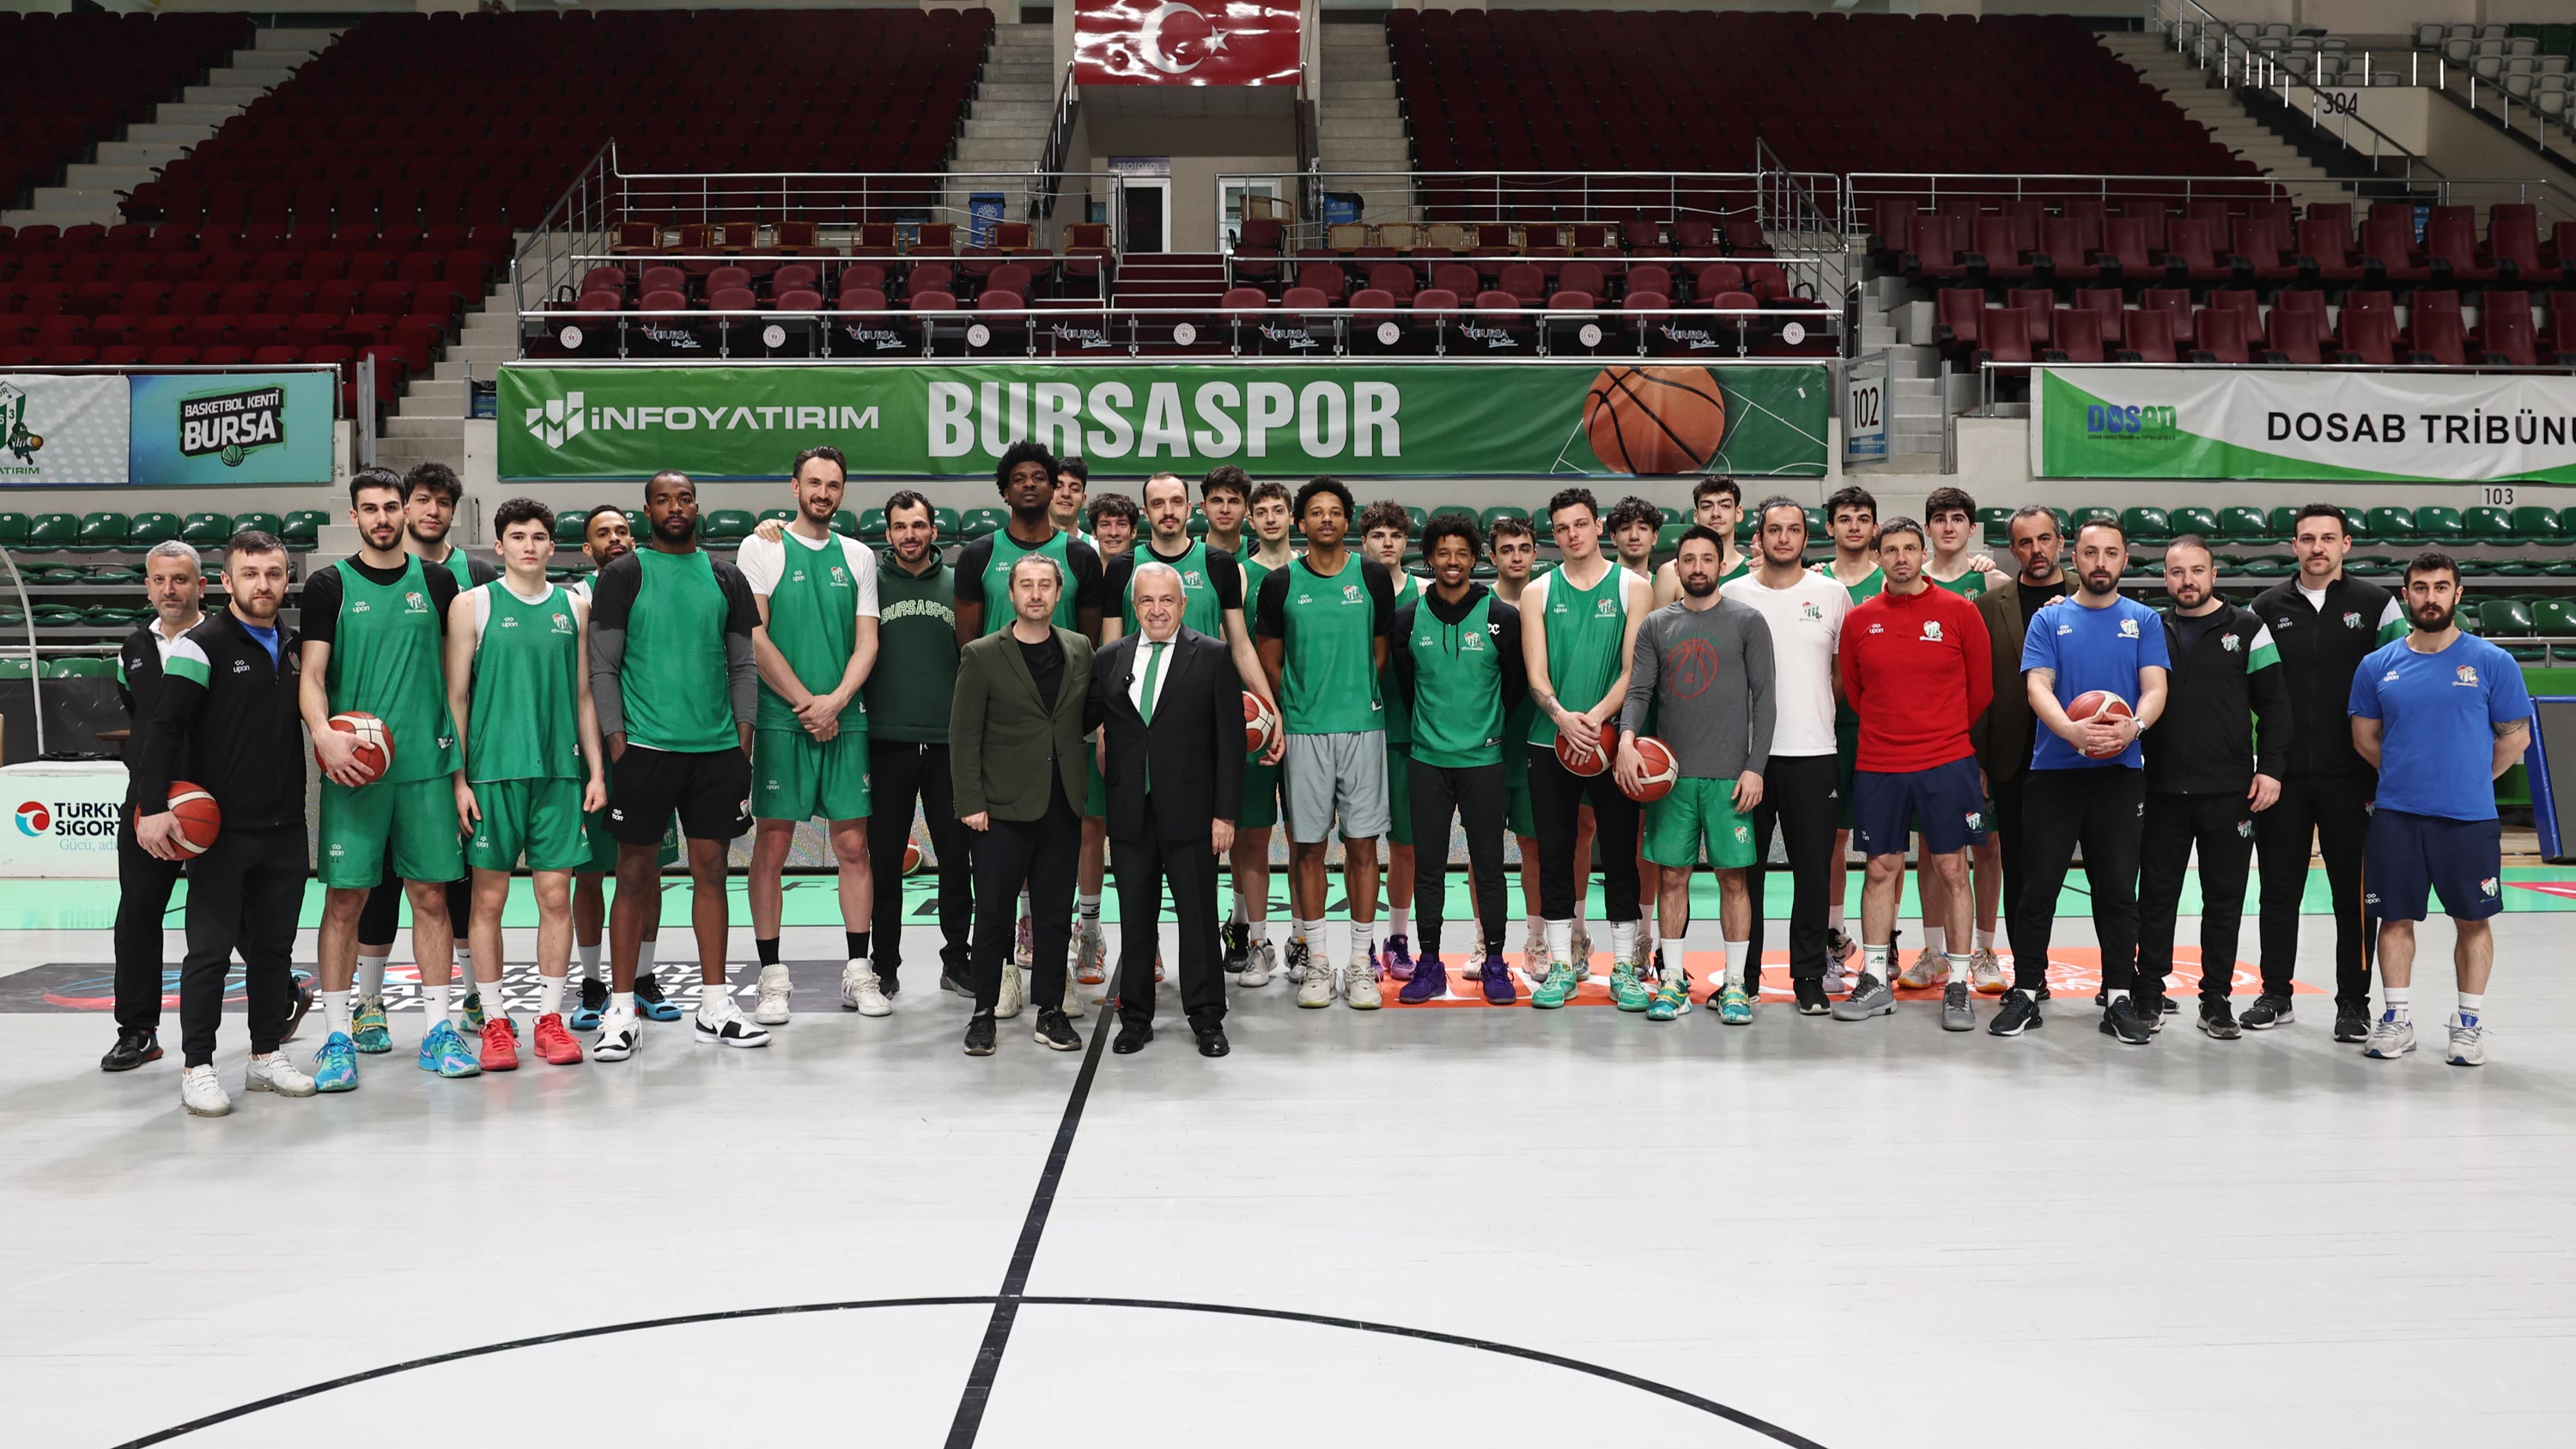 Şadi Özdemir Haberleri - Şadi Özdemir Bursaspor Basketbol Takımı’nı antrenmanda izledi | 